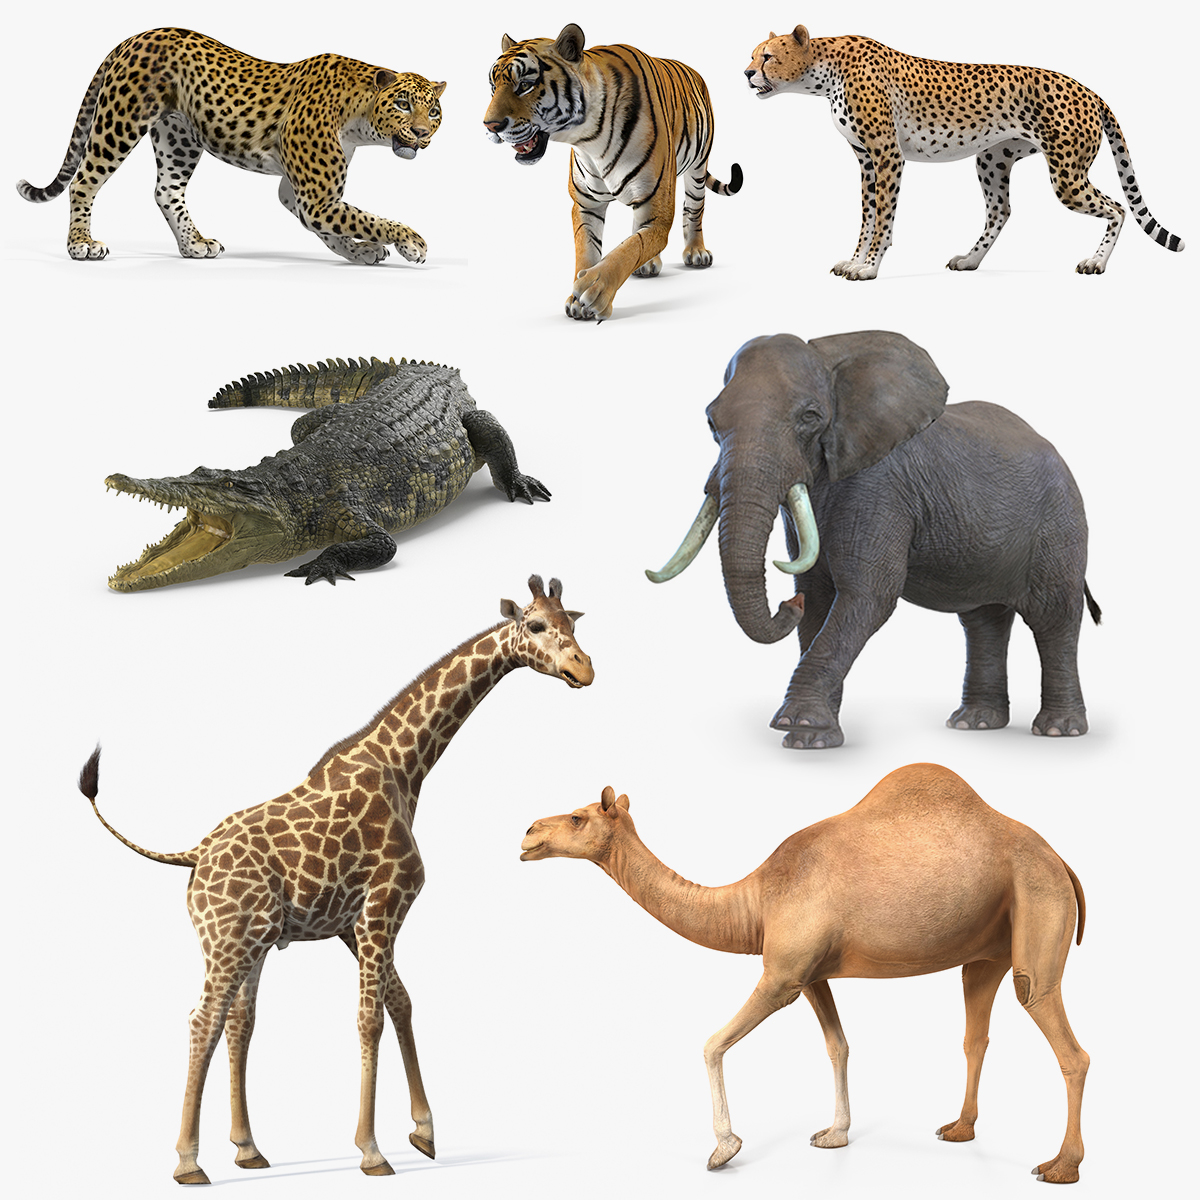 Hướng dẫn cách xem hình 3D động vật bằng tính năng Google 3D ...